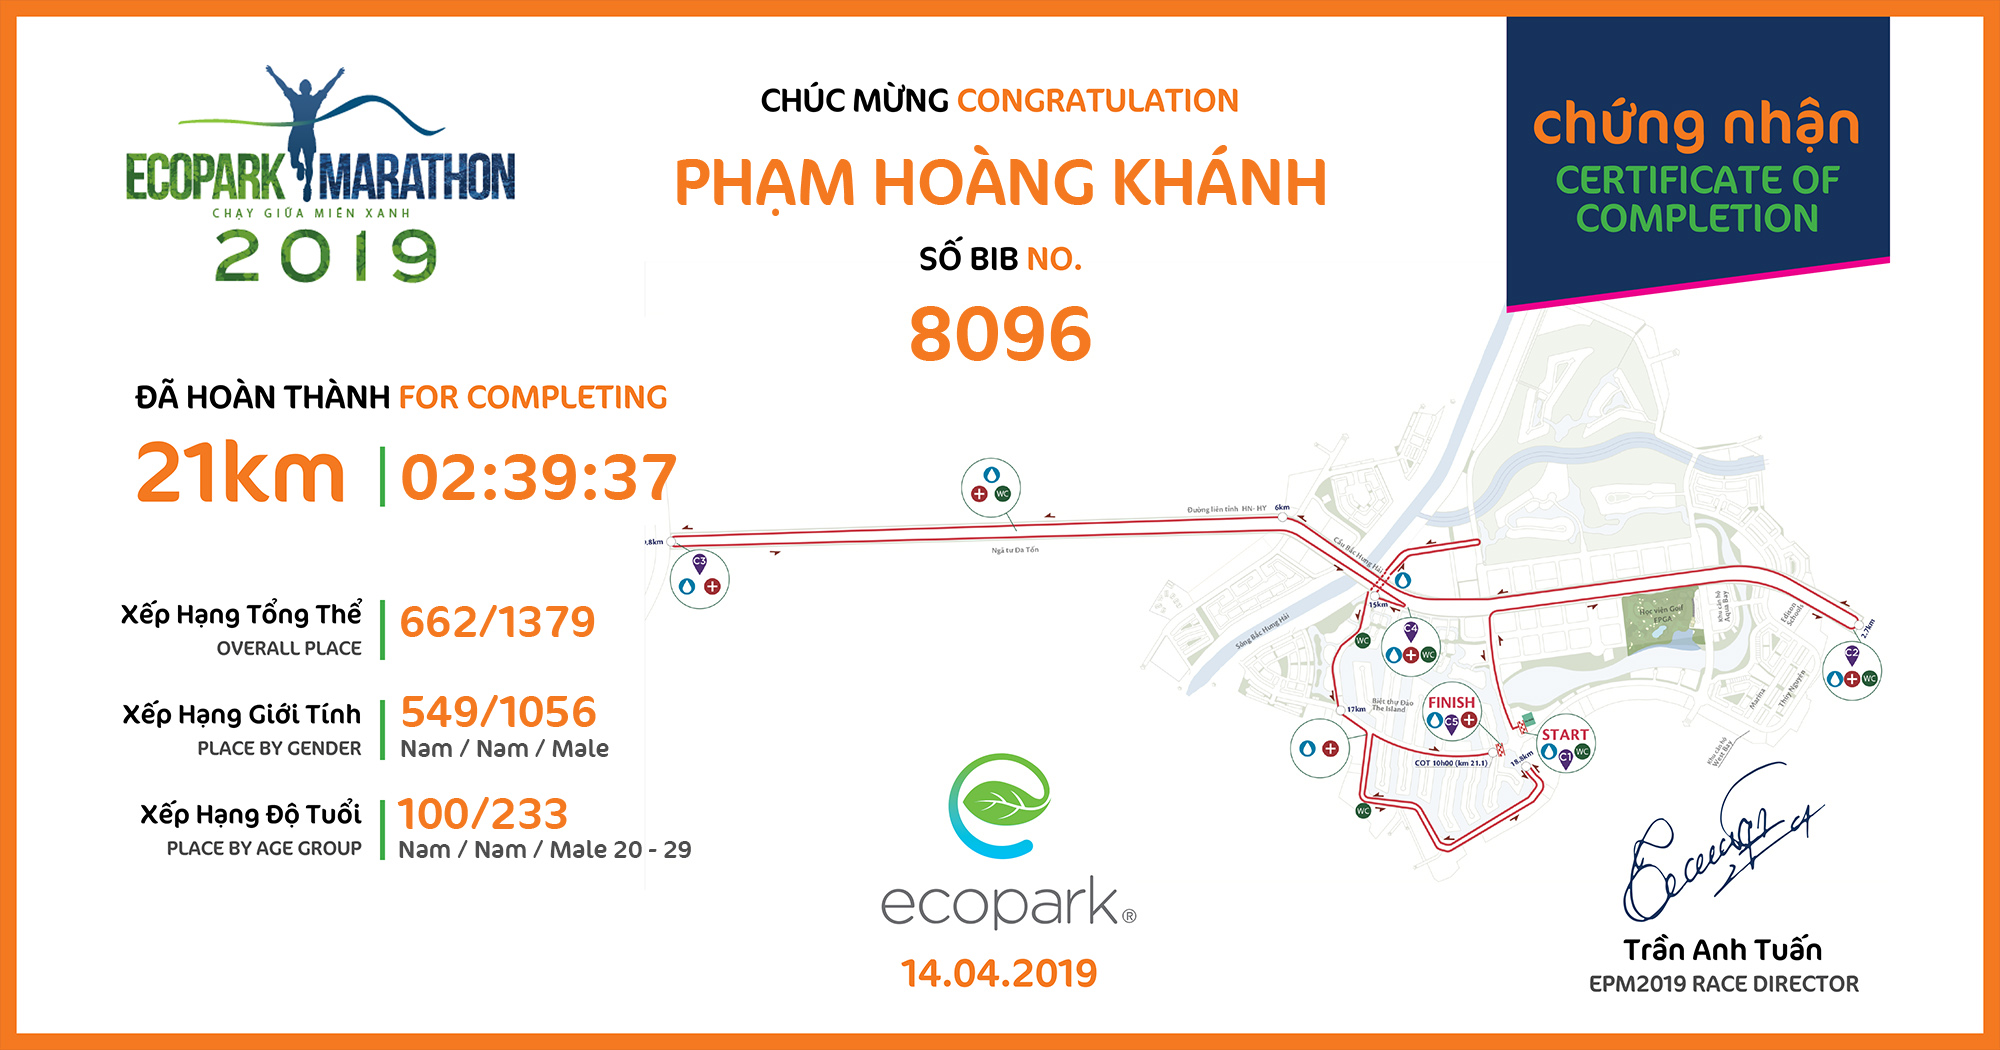 8096 - Phạm Hoàng Khánh